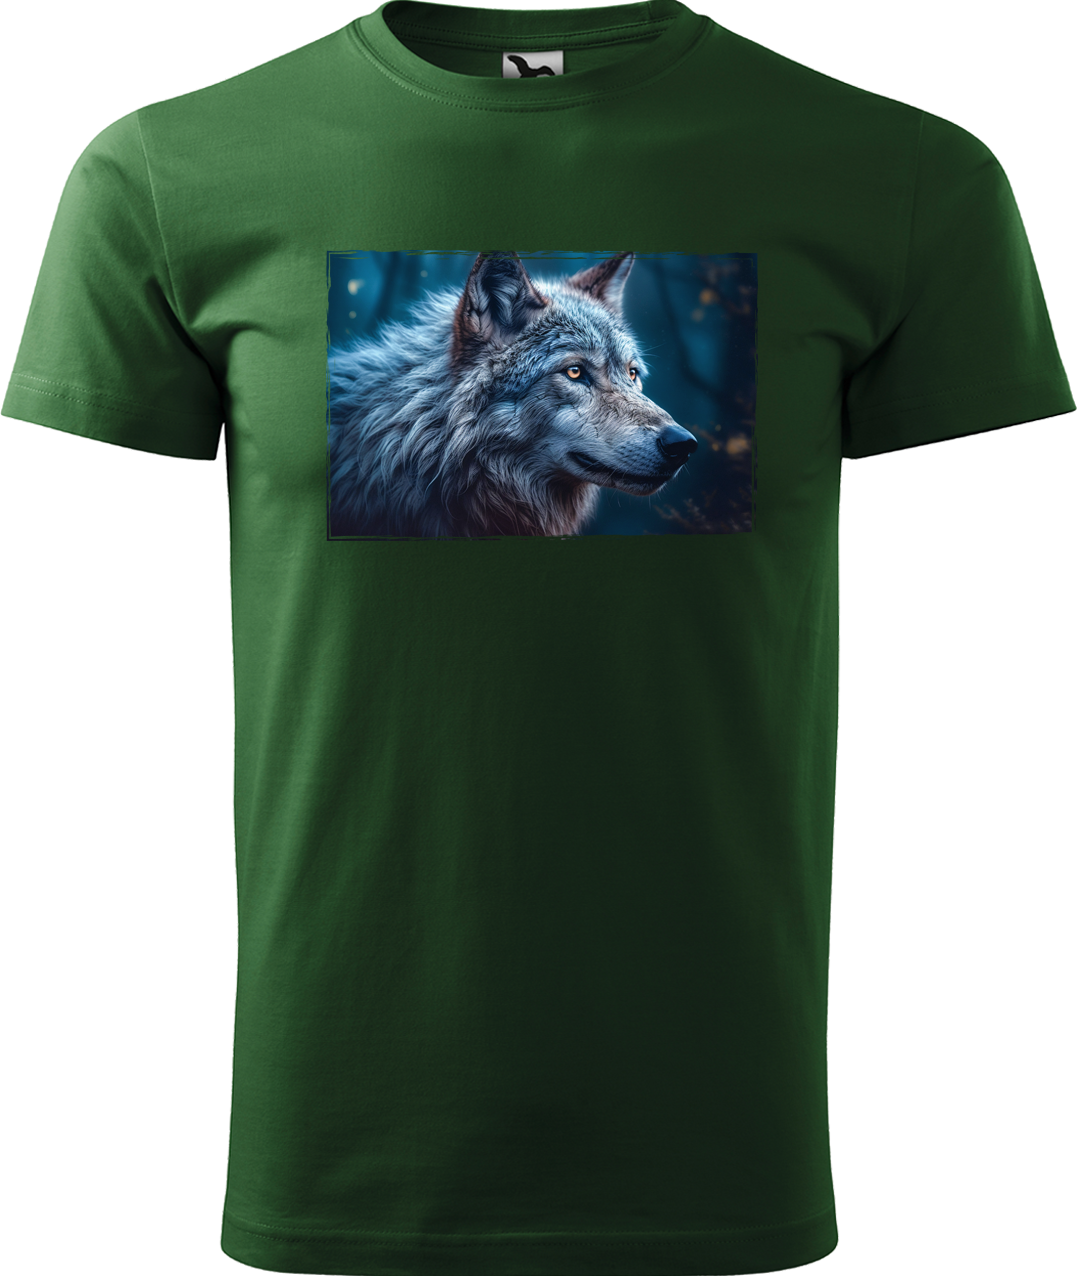 Pánské tričko s vlkem - Modrý vlk Velikost: XL, Barva: Lahvově zelená (06)